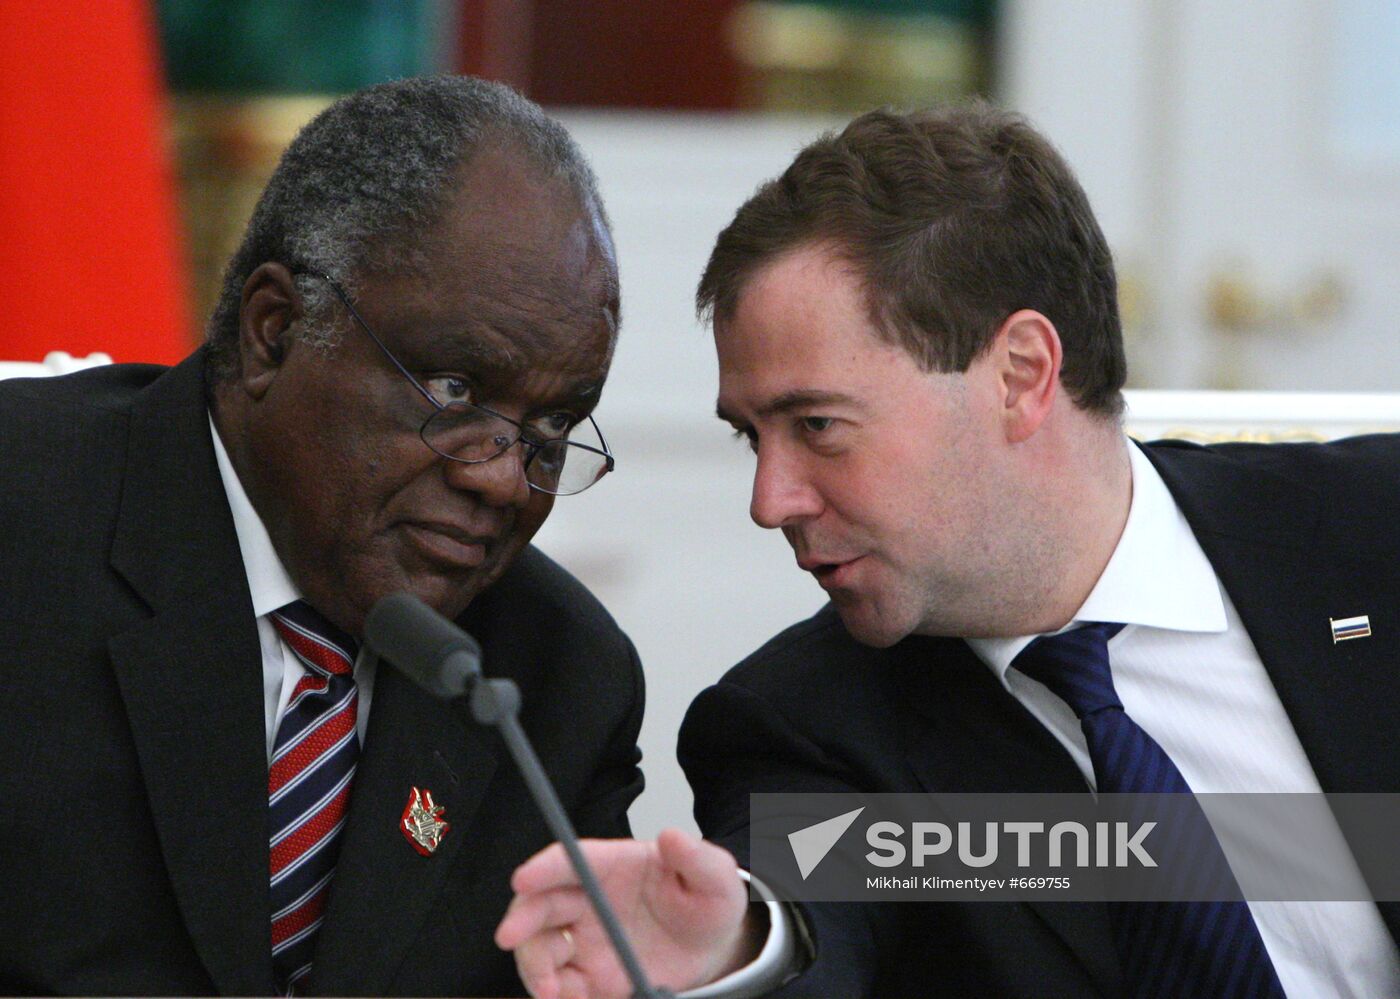 Dmitry Medvedev and Hifikepunye Pohamba